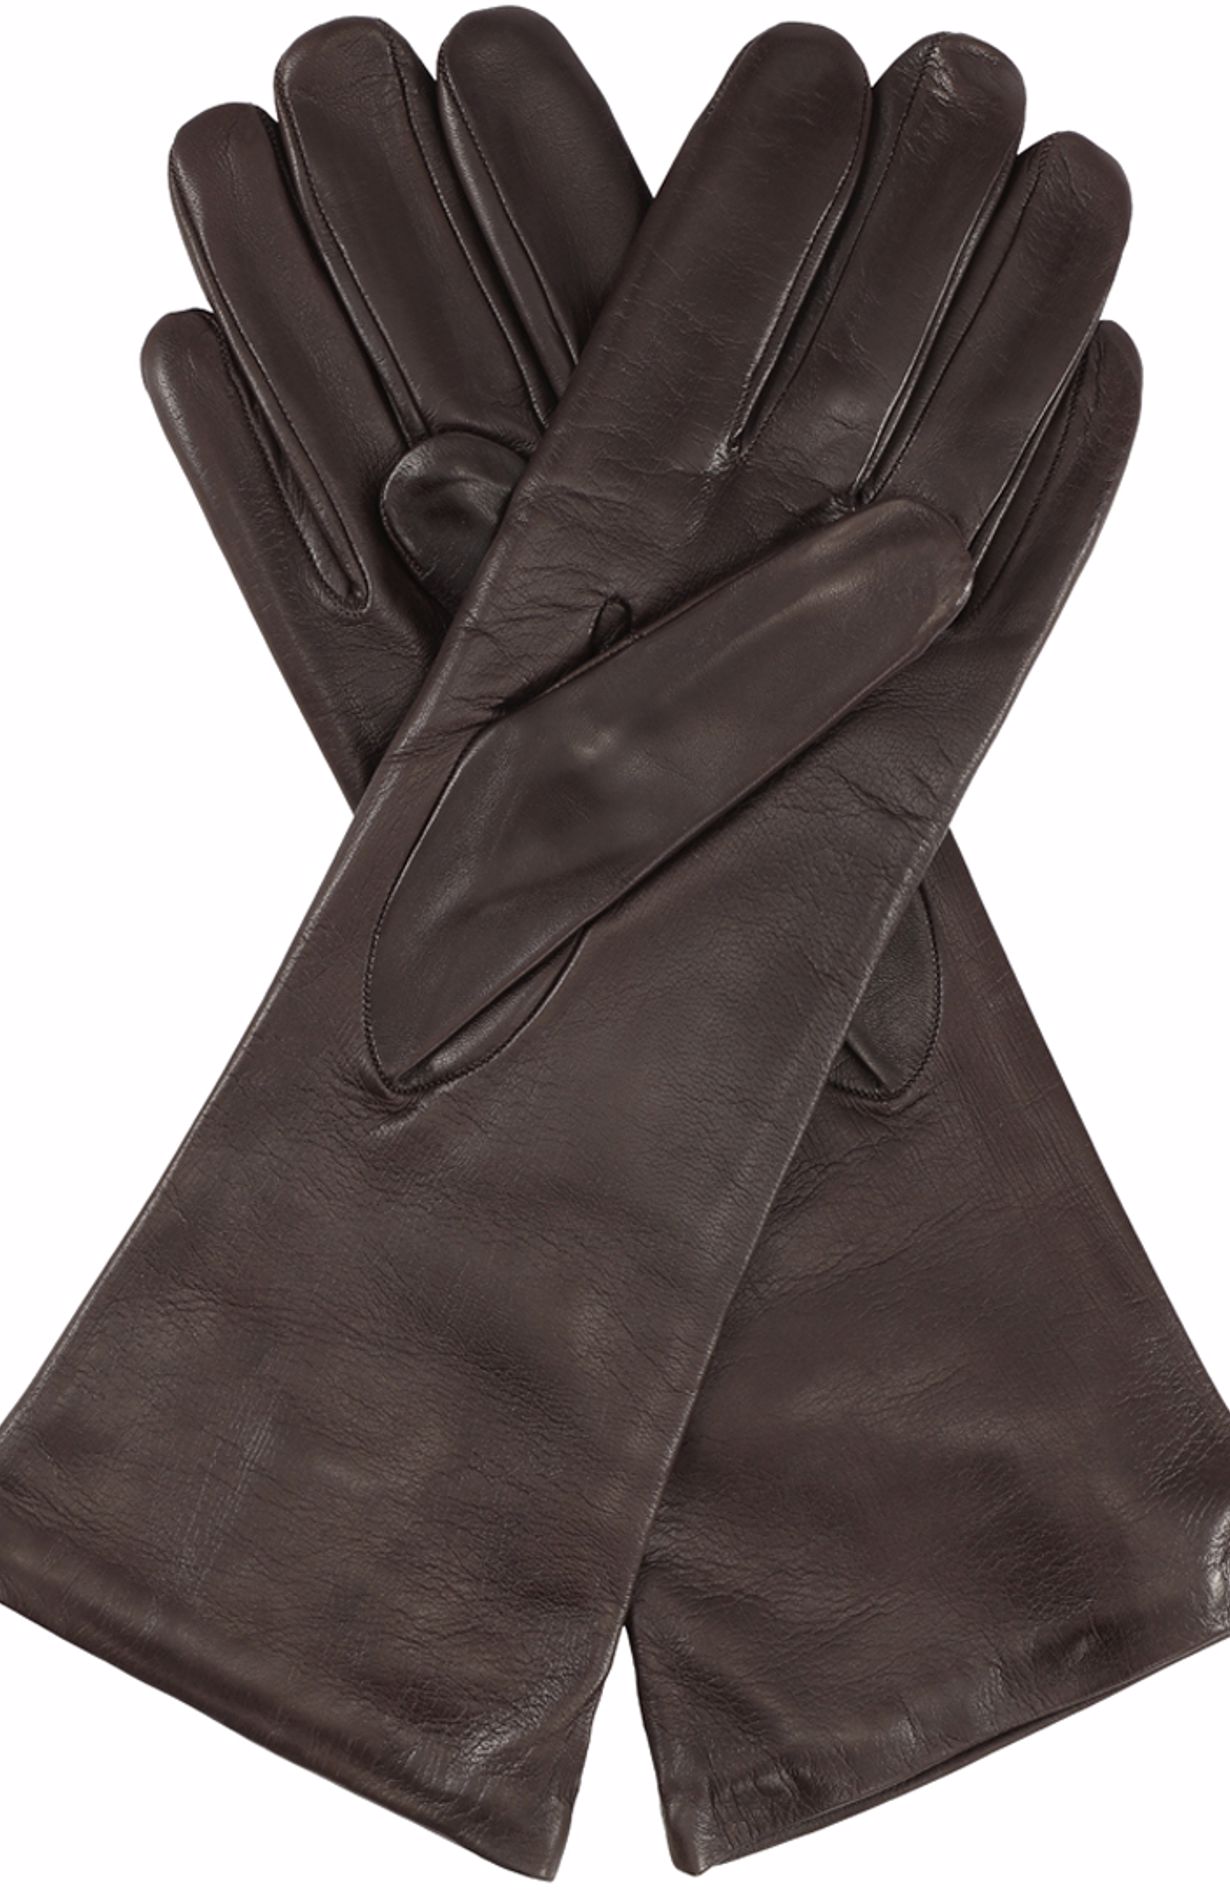 Skin Gloves - Brown